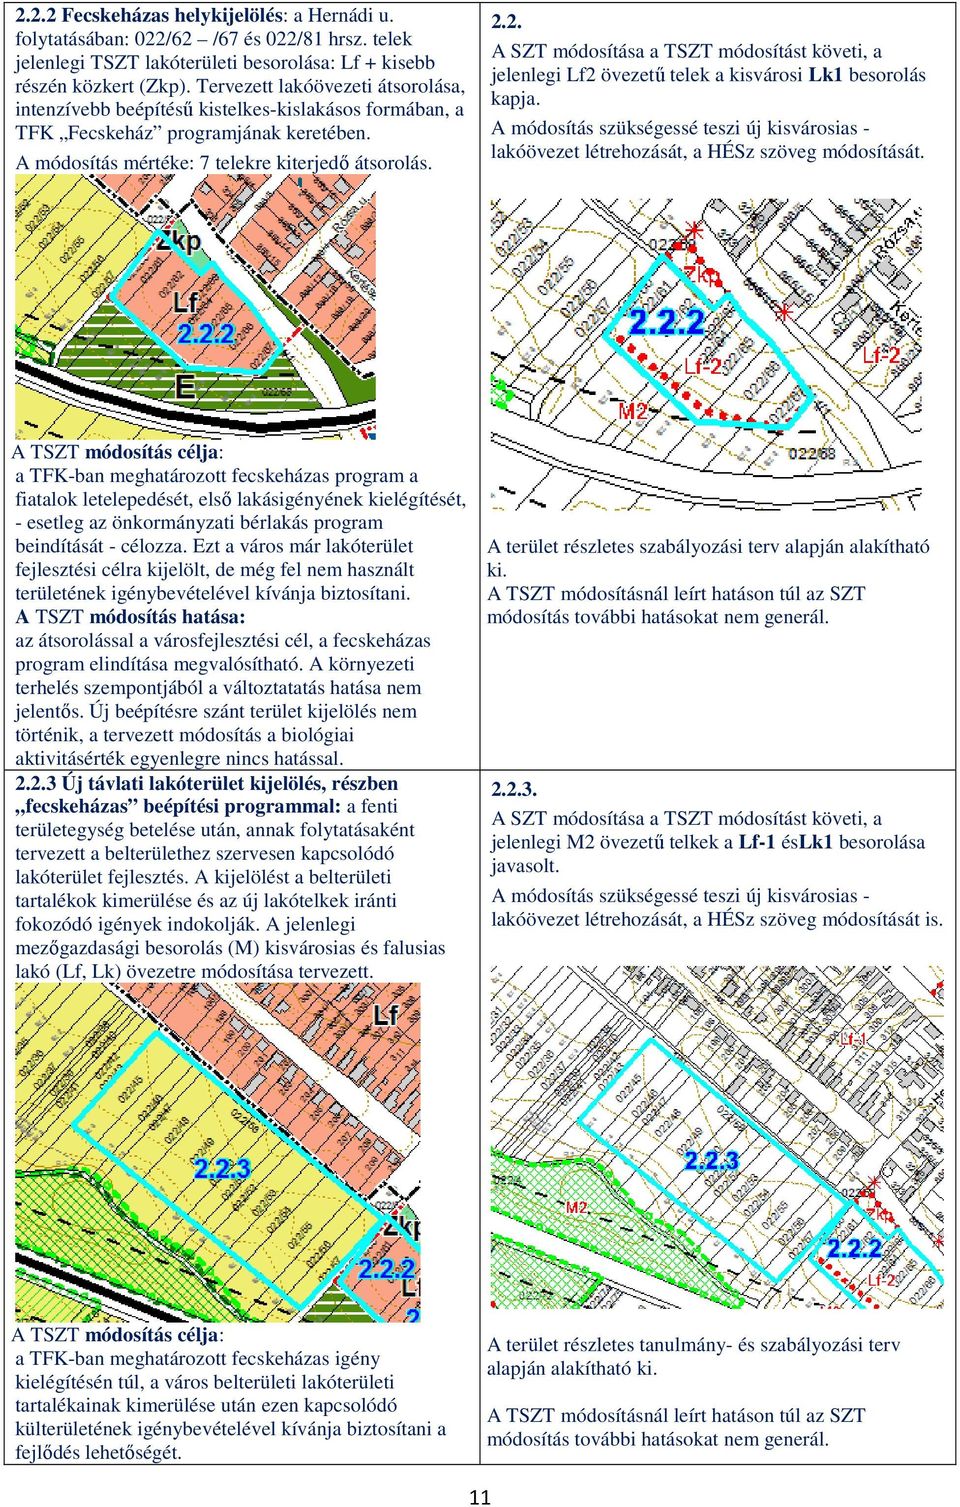 2. jelenlegi Lf2 övezetű telek a kisvárosi Lk1 besorolás kapja. A módosítás szükségessé teszi új kisvárosias - lakóövezet létrehozását, a HÉSz szöveg módosítását.